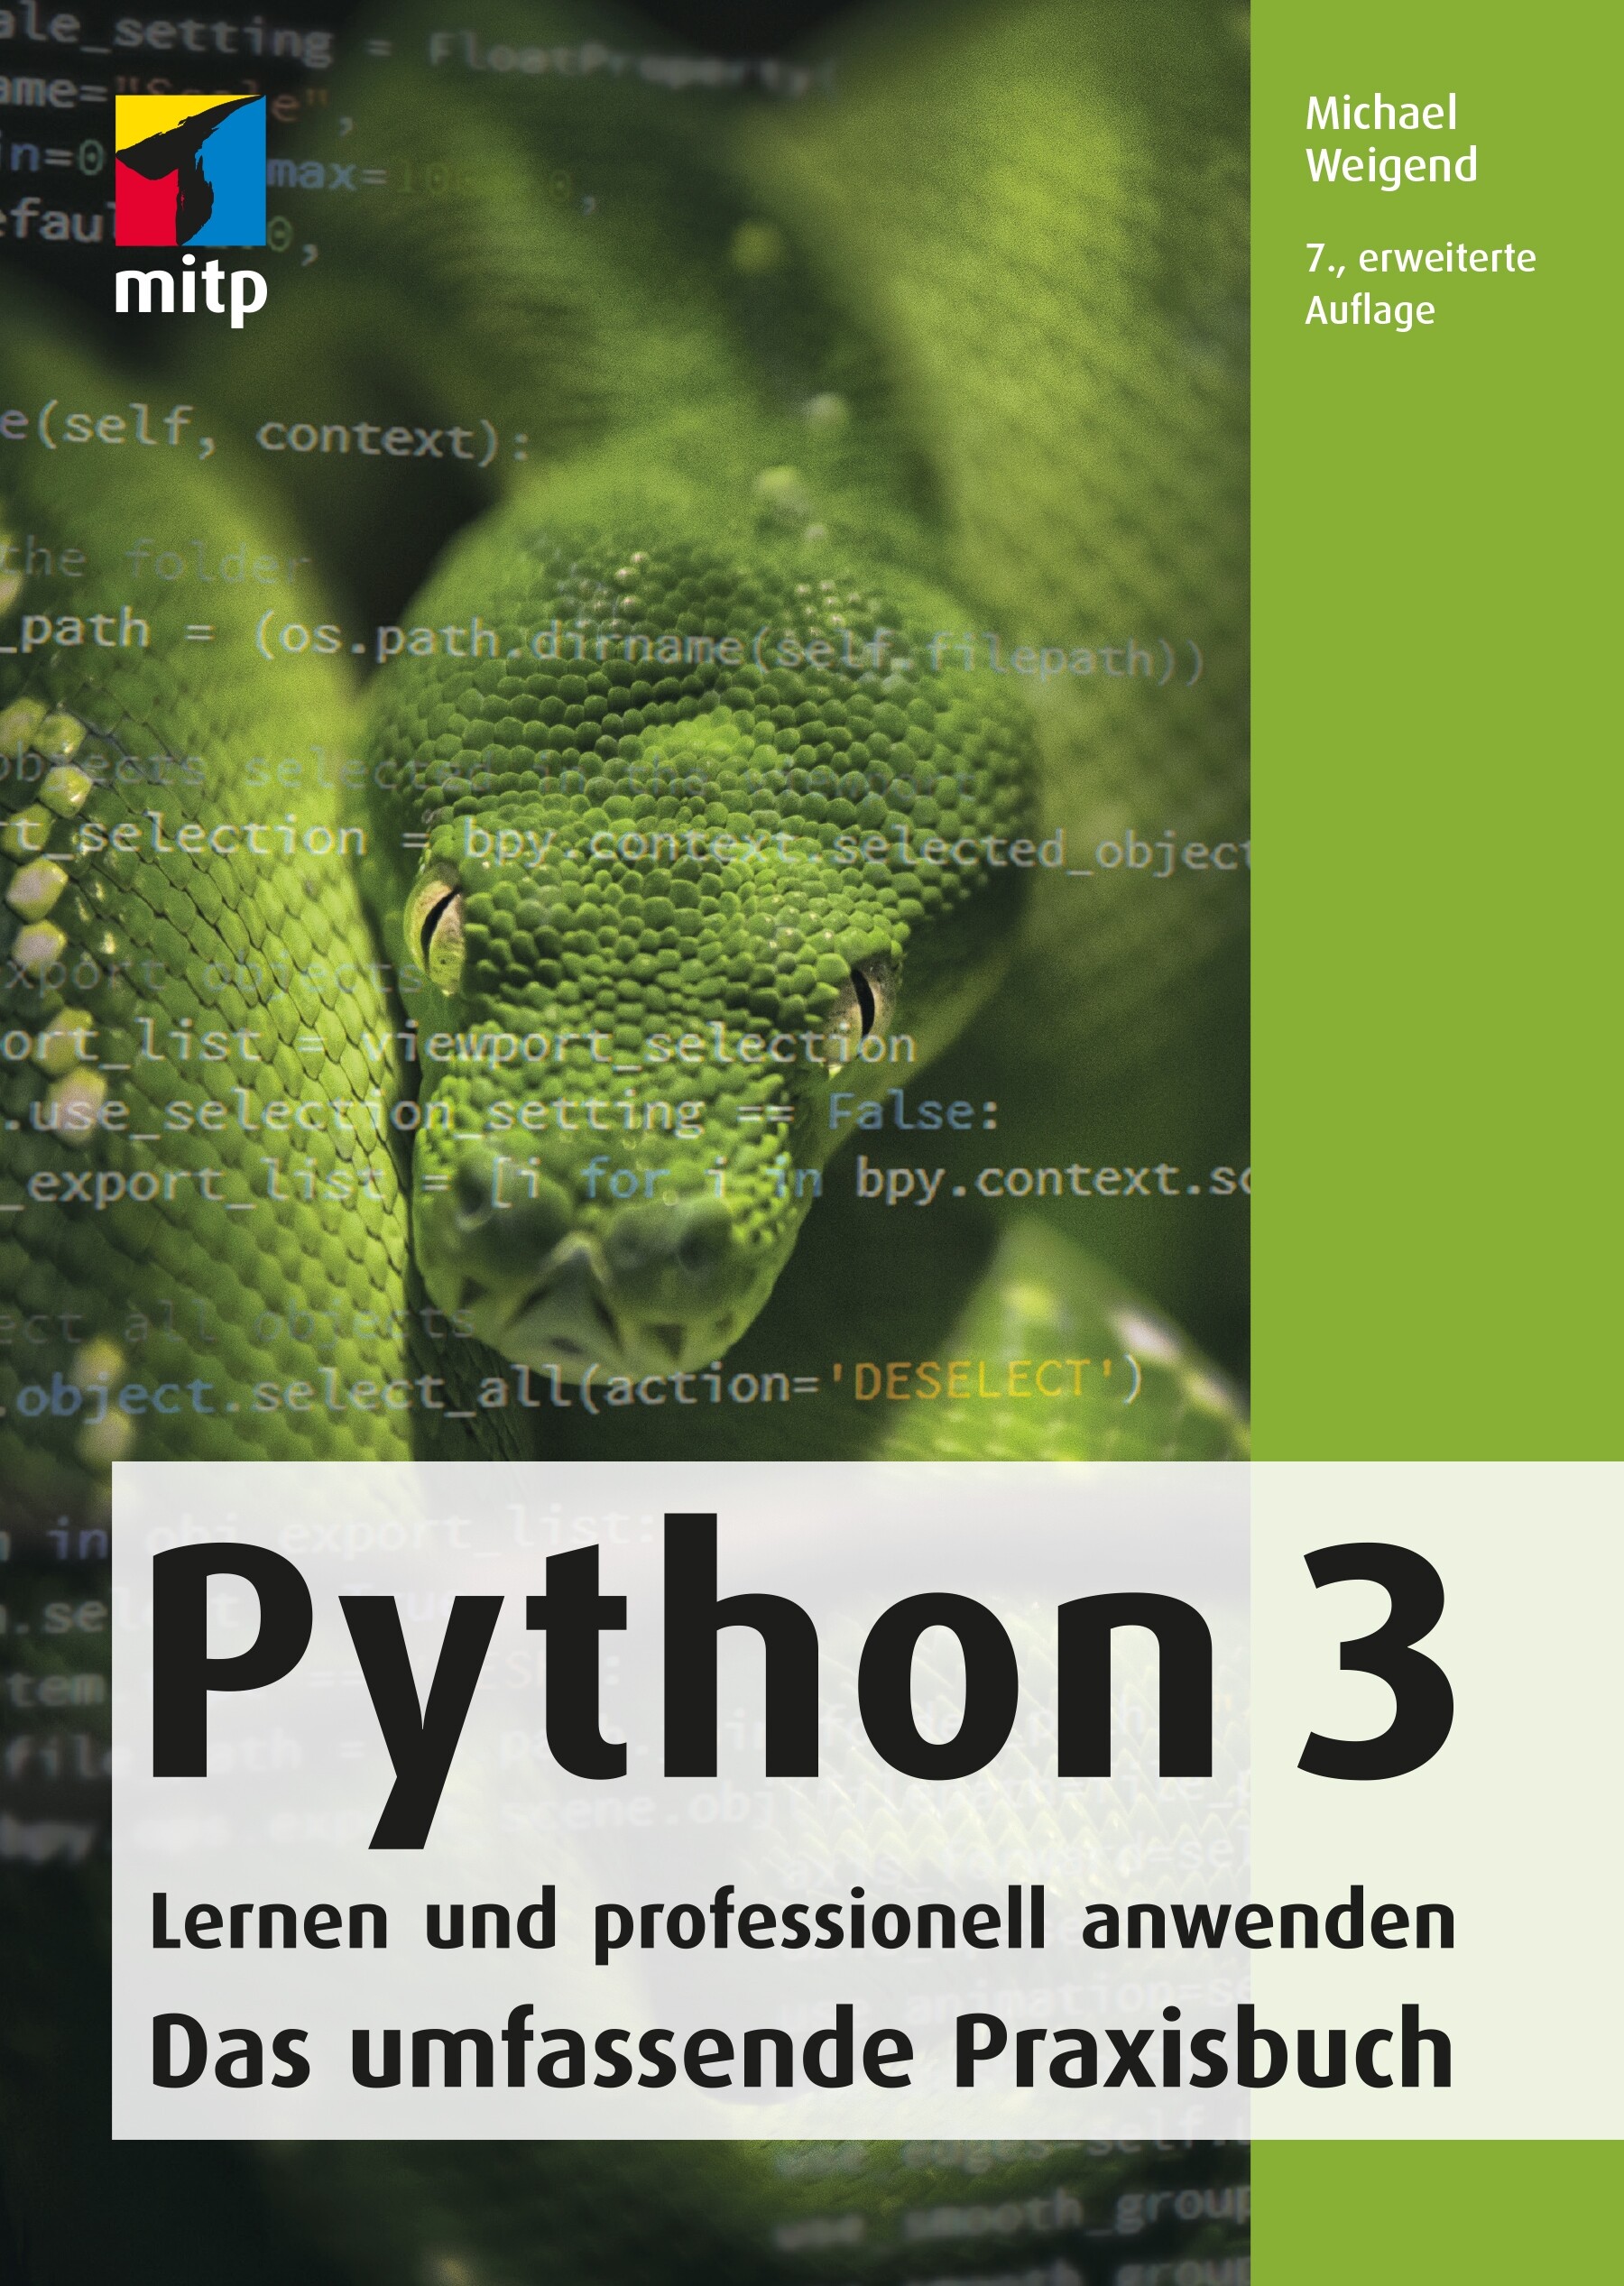 Python 3 - Lernen und professionell anwenden (7. Aufl.)